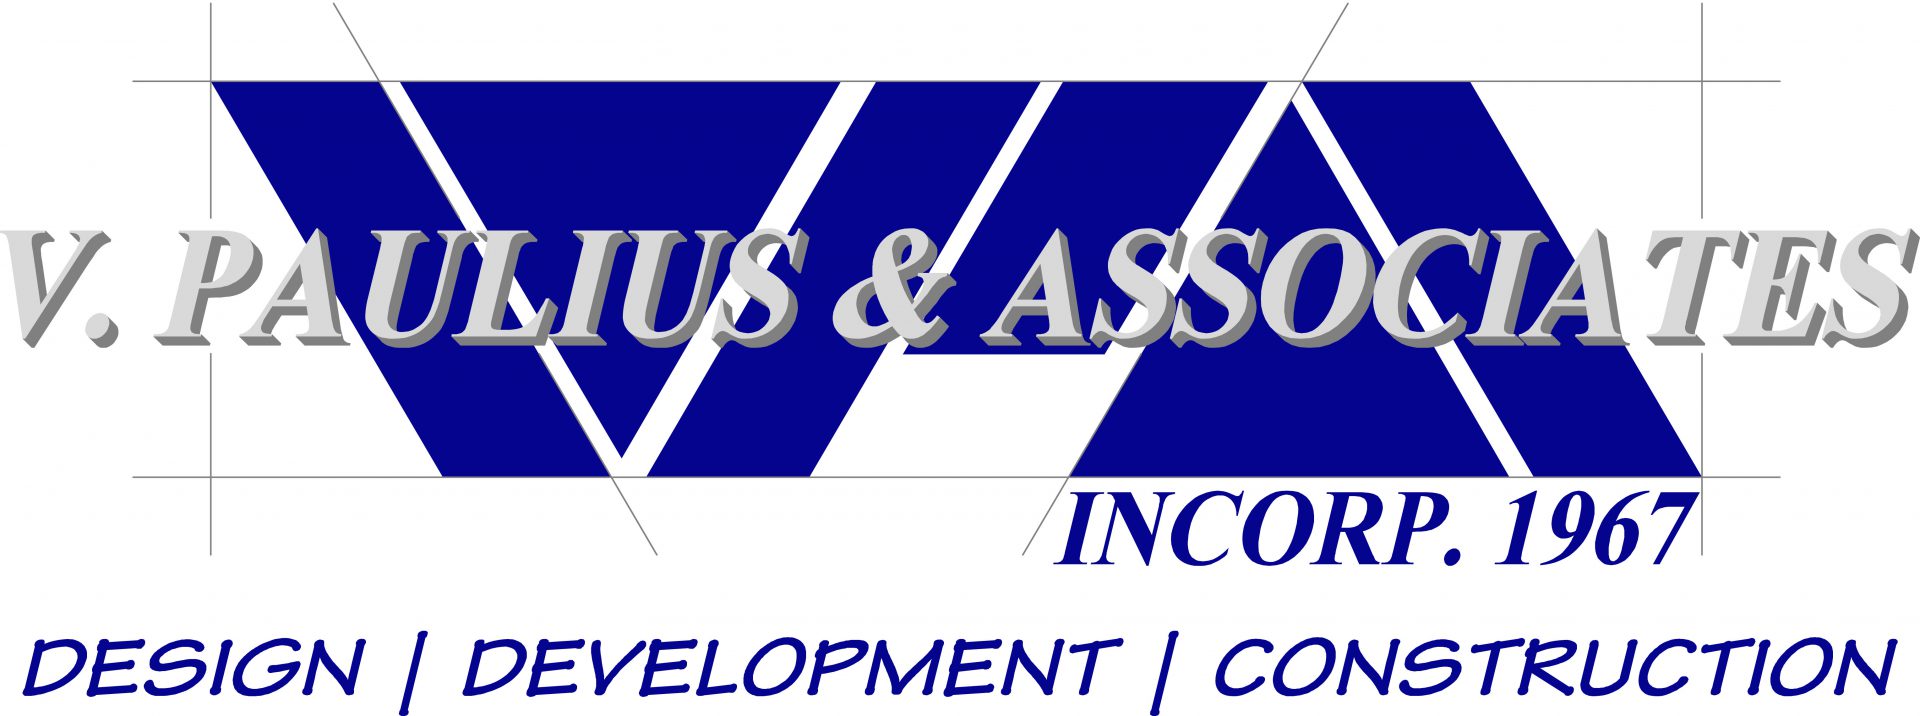 V. Paulius and Associates logo